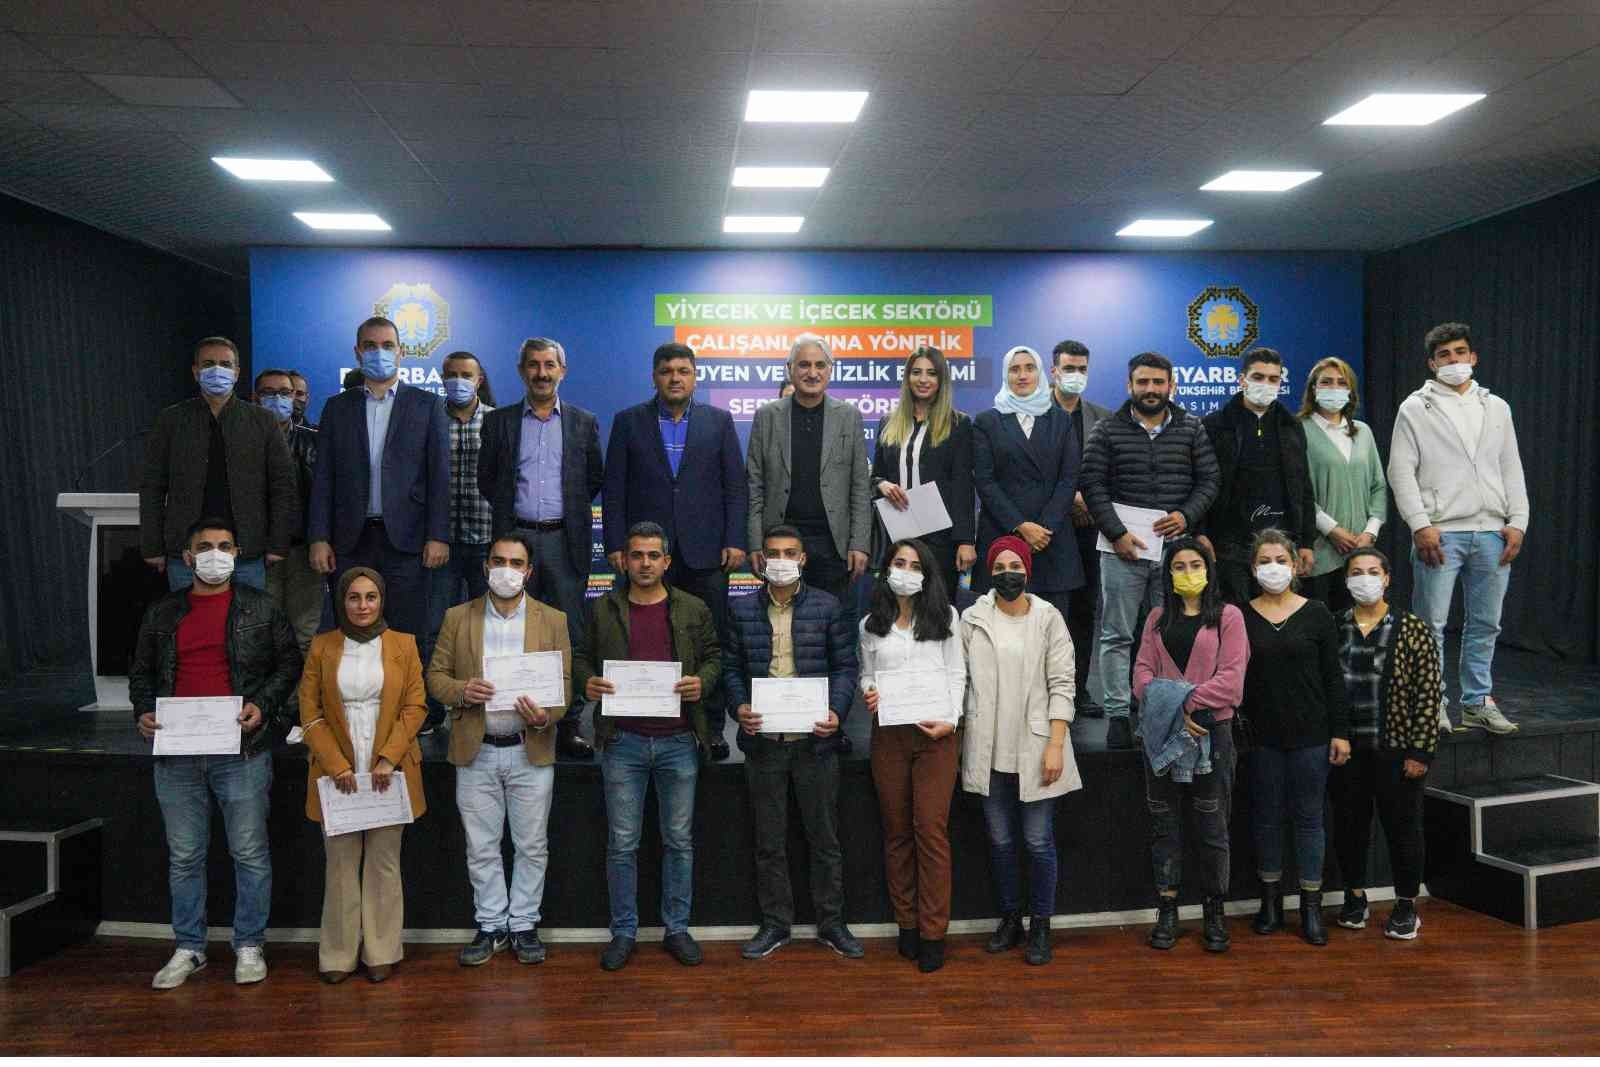 Diyarbakır’da hijyen ve temizlik kursunu tamamlayanlar sertifikalarını aldı #diyarbakir